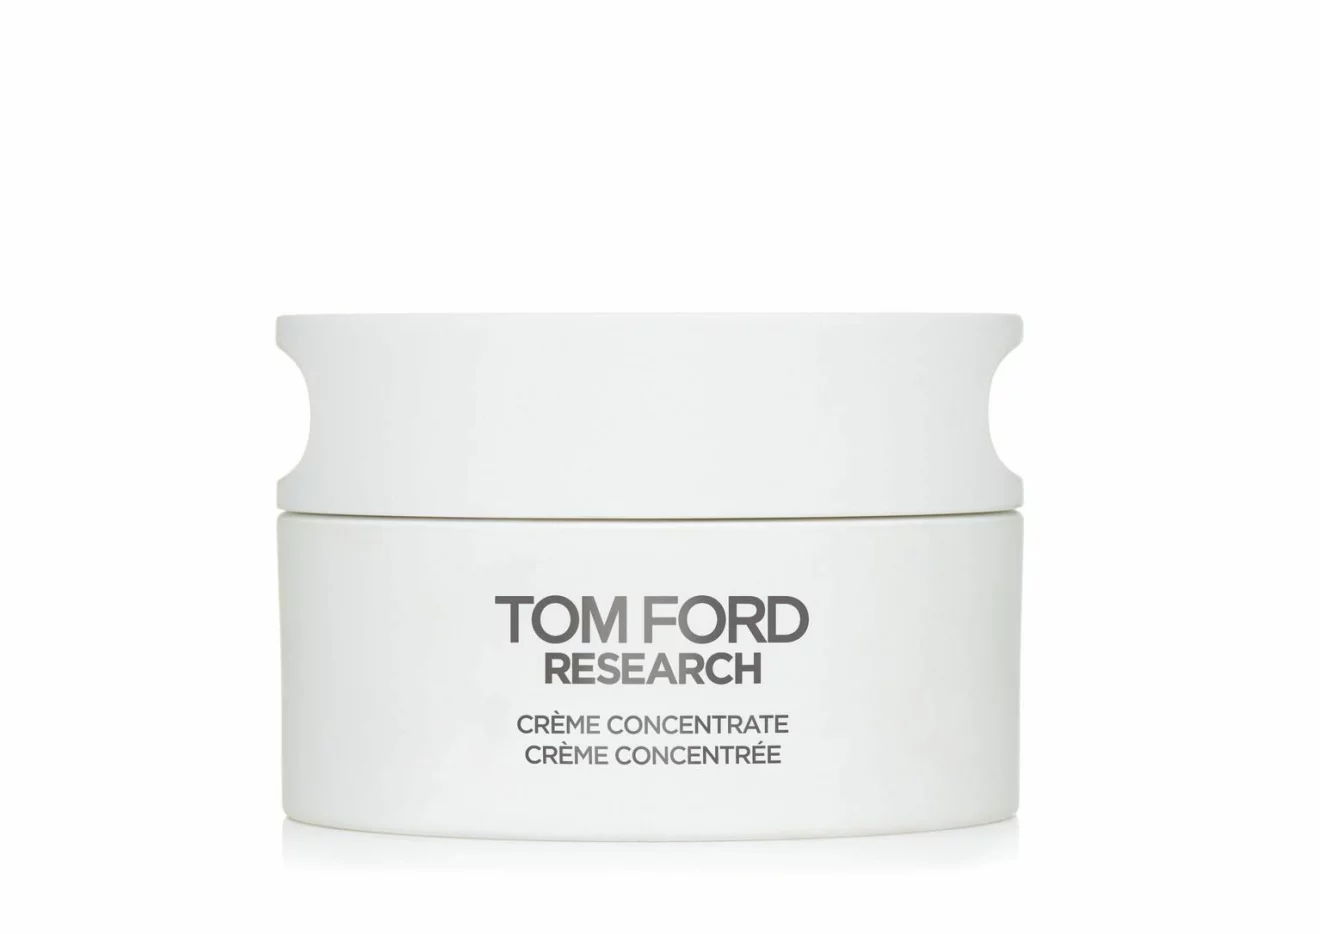 Crème concentrate är en återfuktande dagkräm från Tom Ford Research.